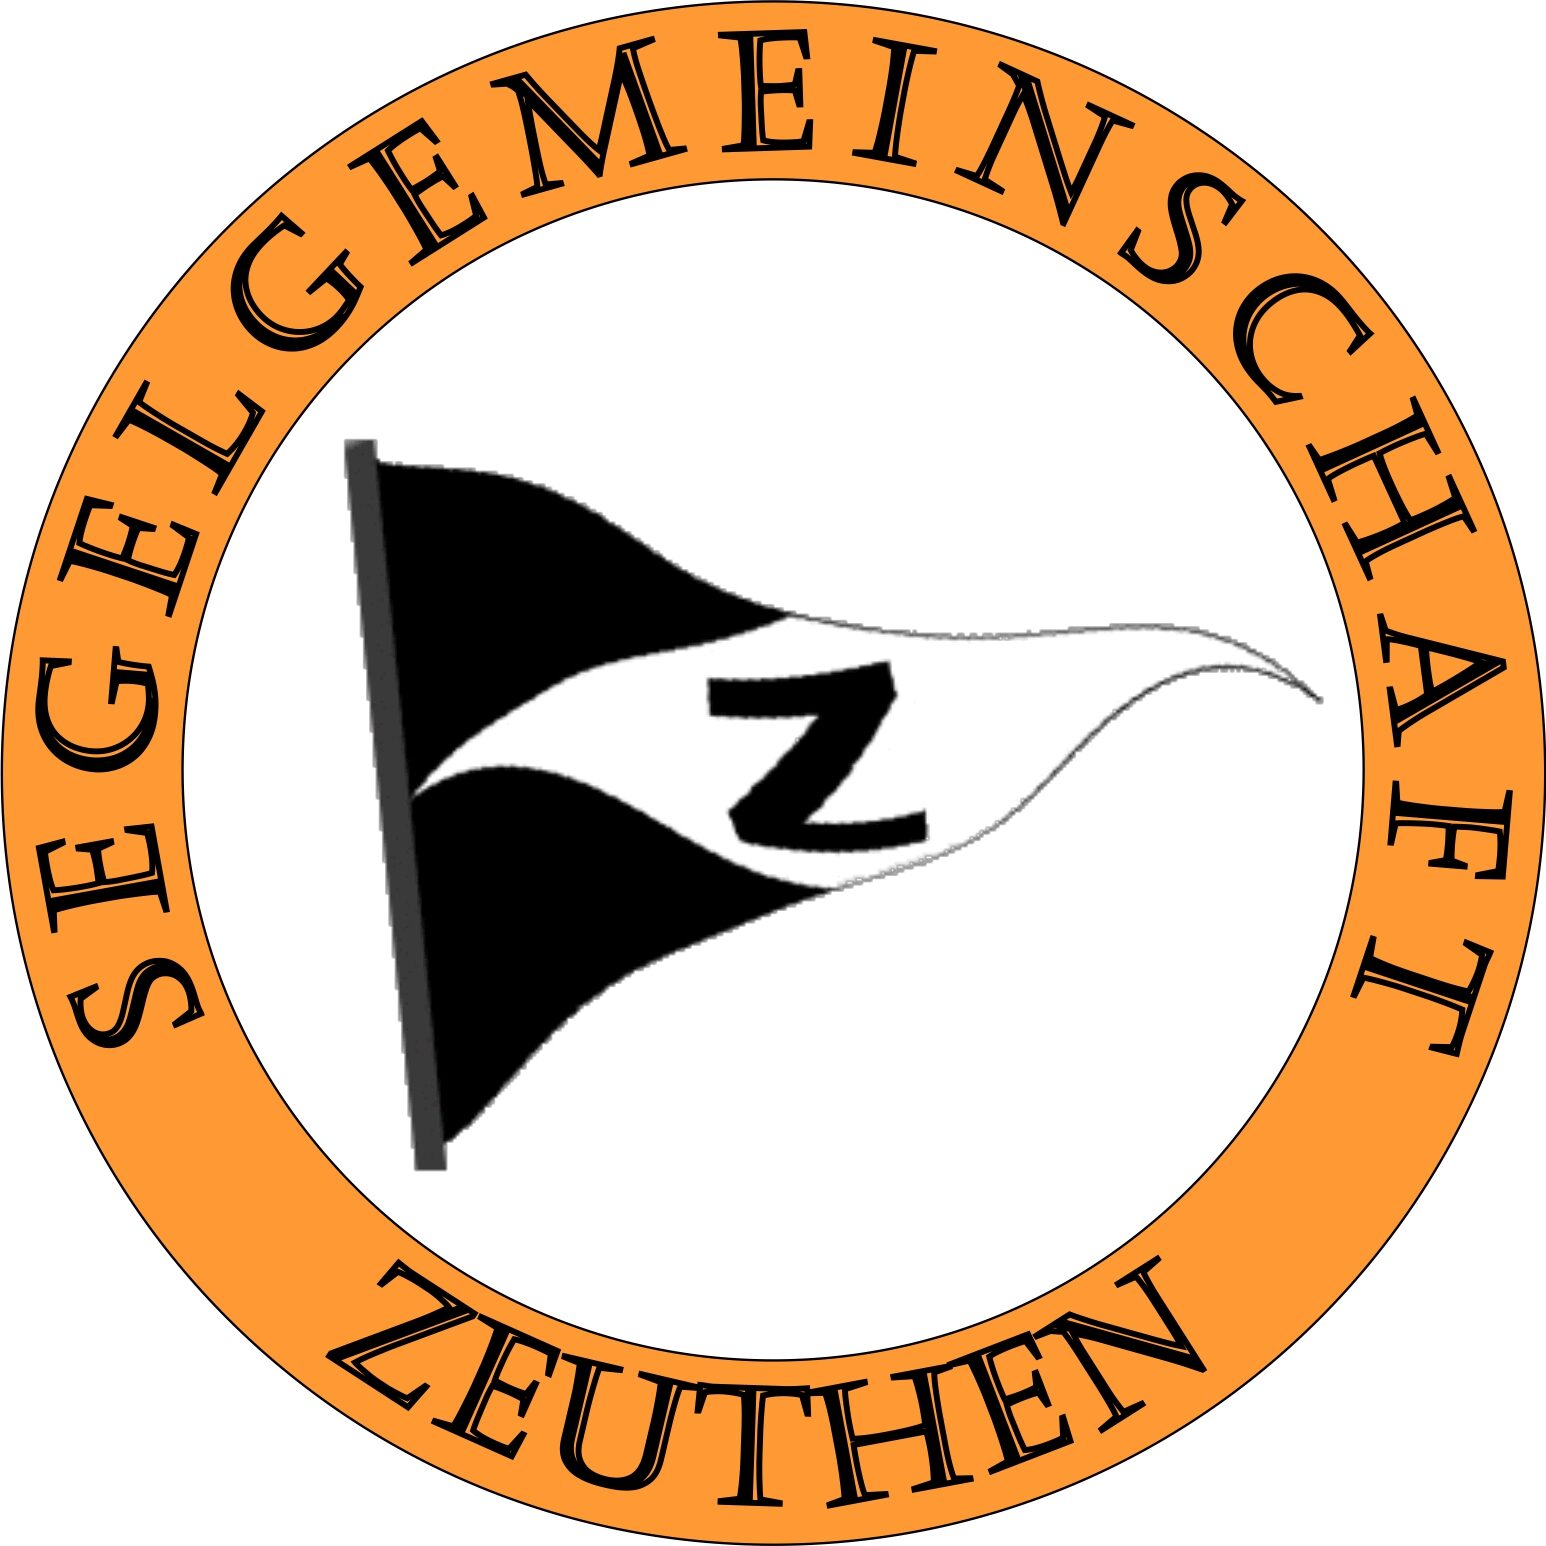 Segelgemeinschaft Zeuthen e.V. – SGZ